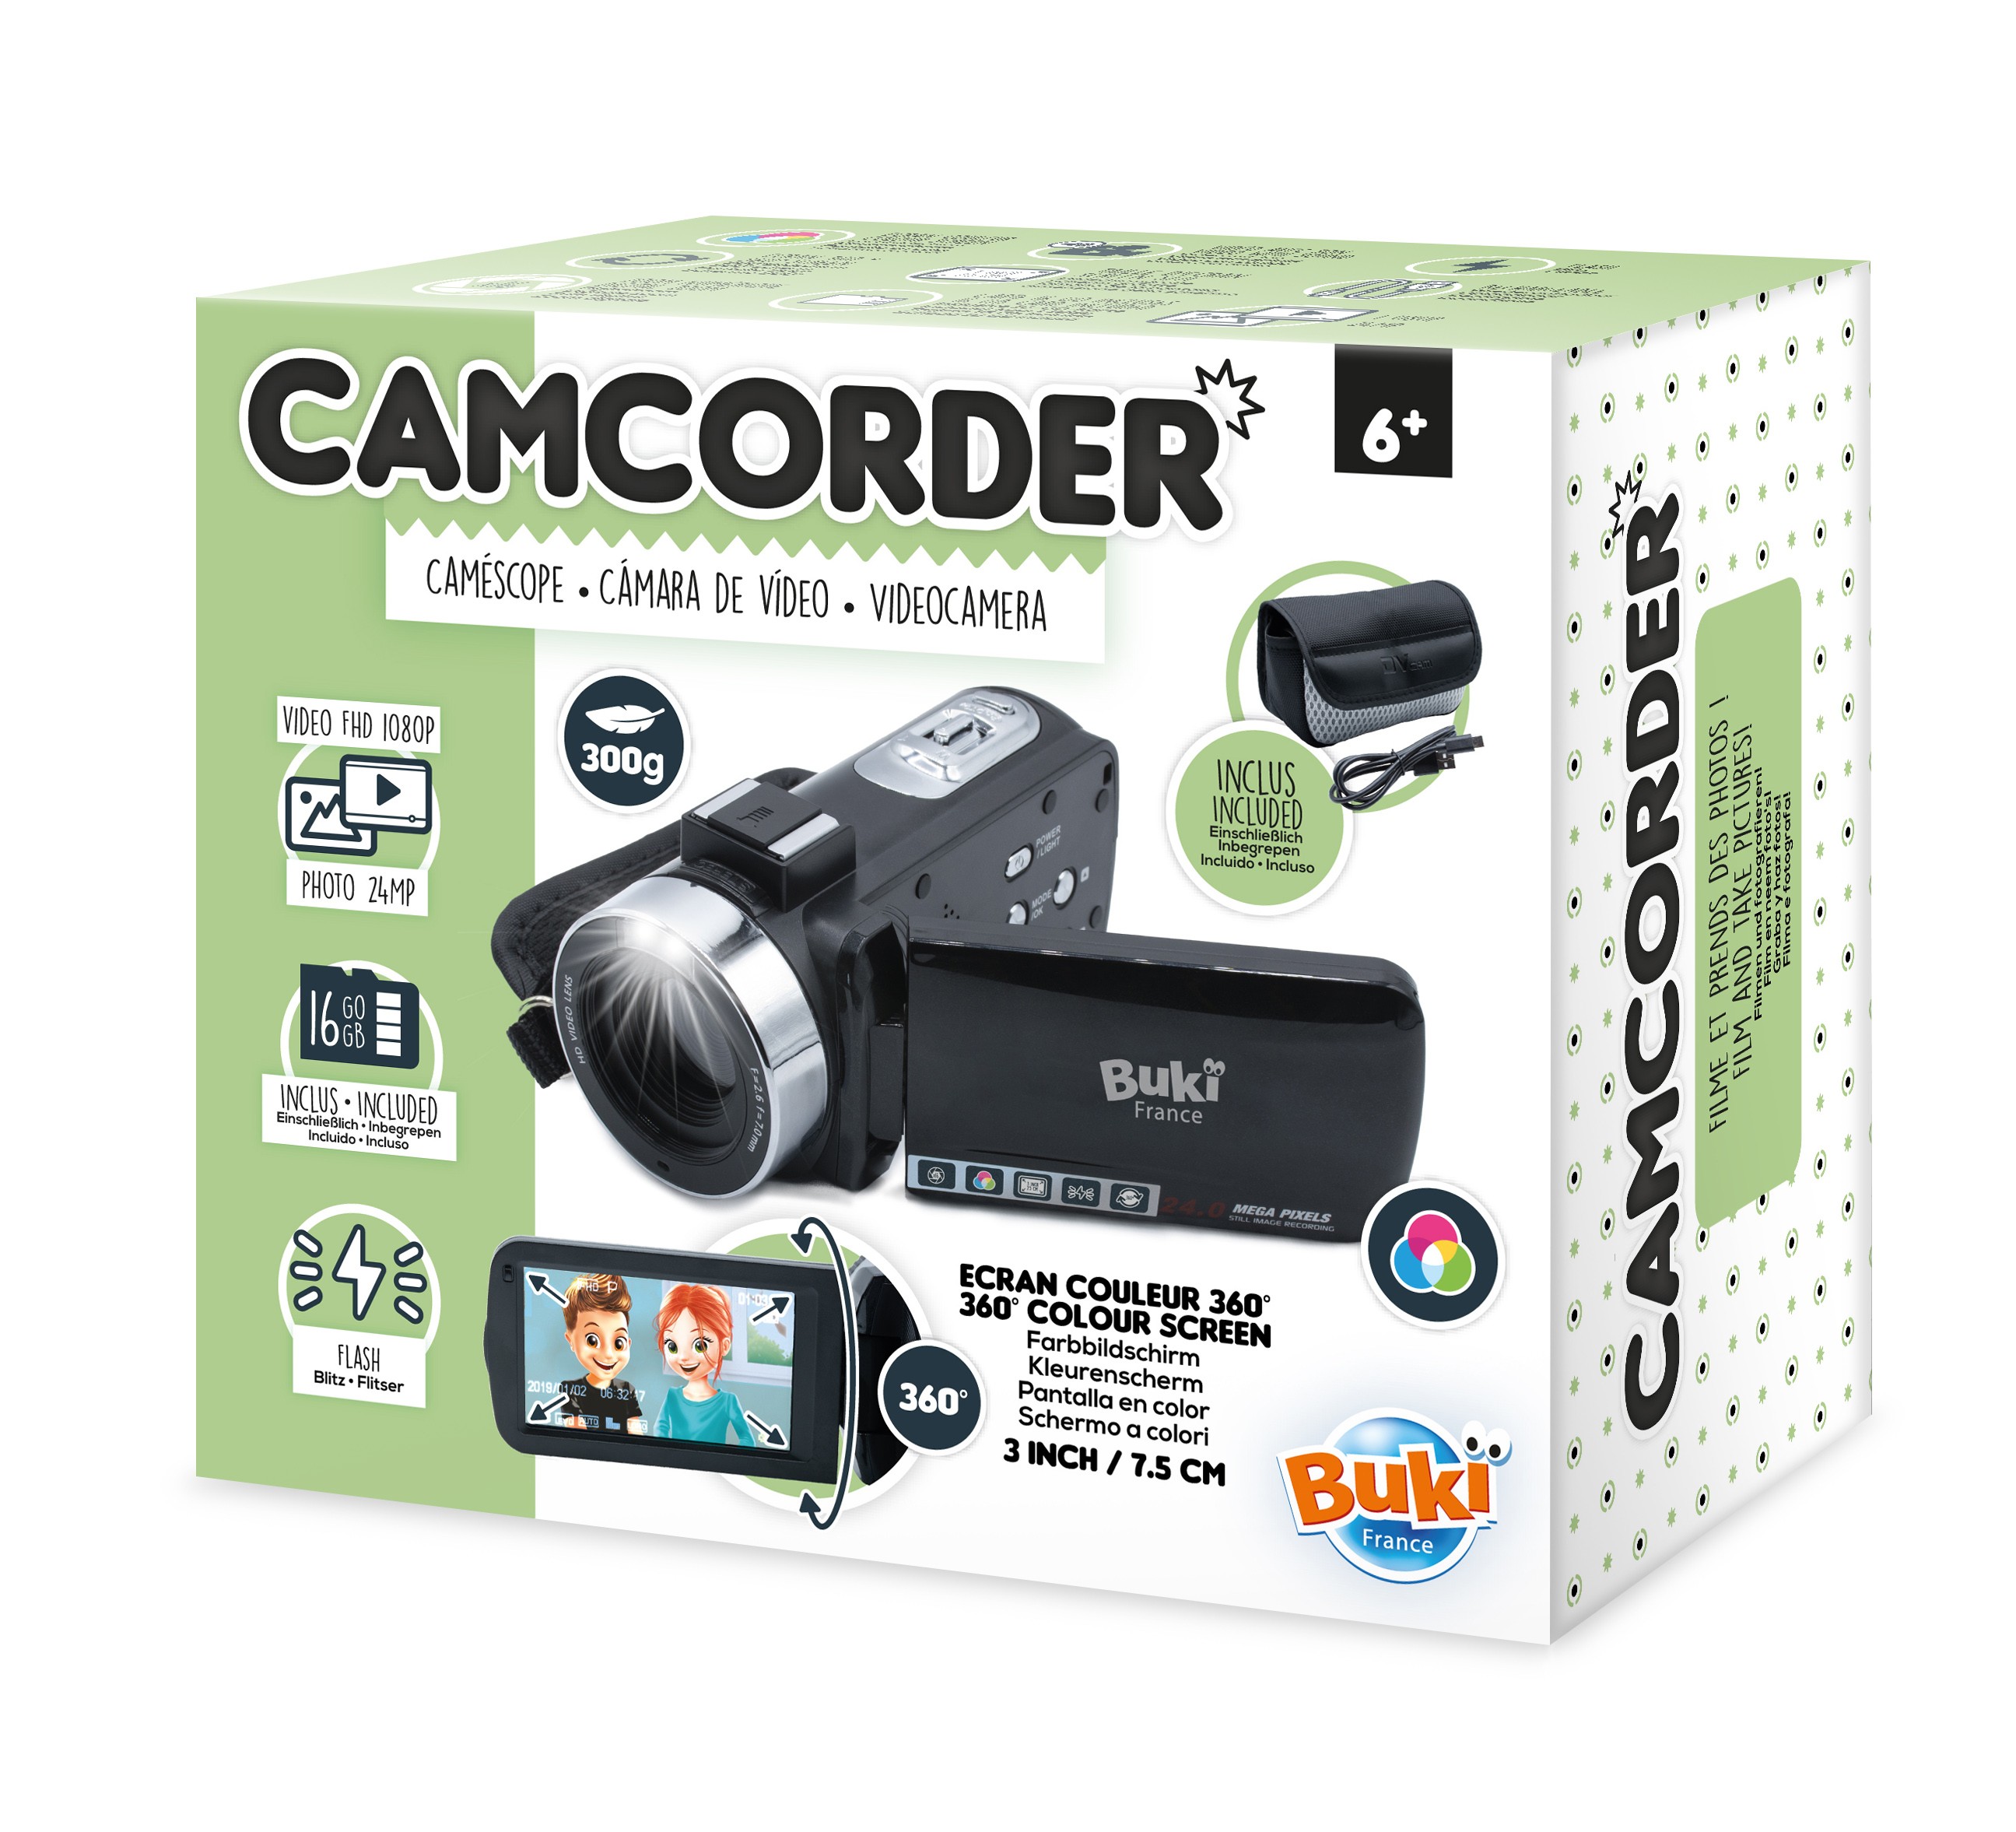 Caméra vidéo numérique HD pour tout-petits, jouets pour enfants